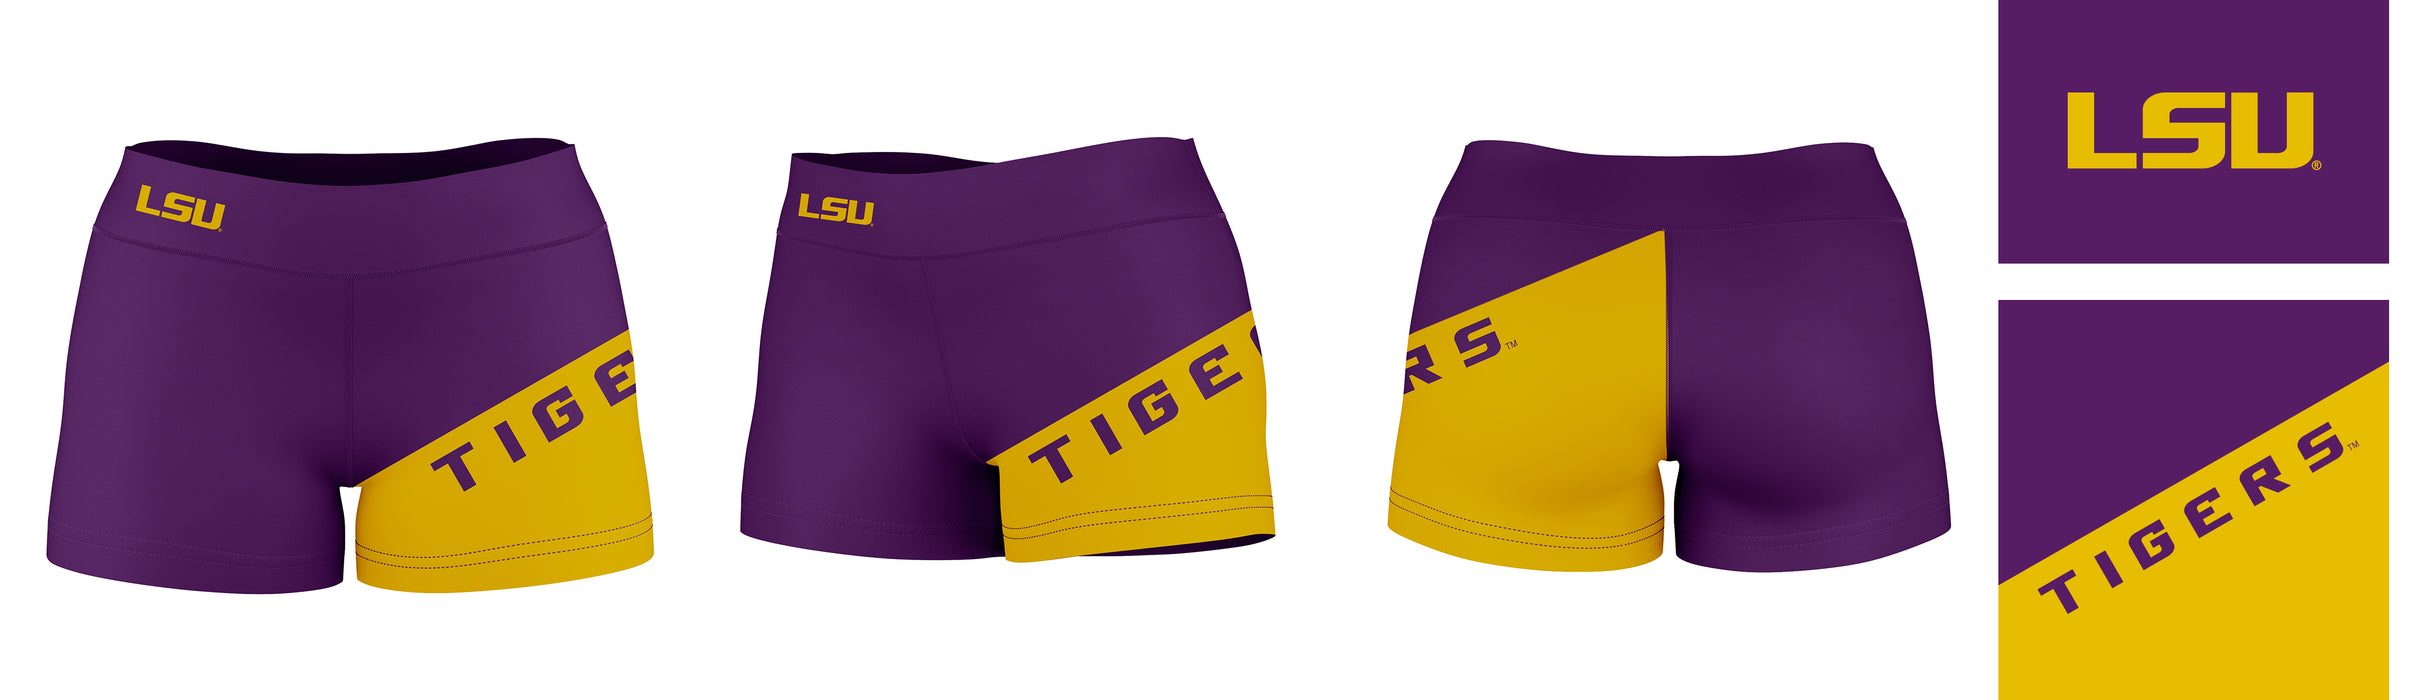 LSU Tigers Vive La Fete Game Day Collegiate Leg Color Block Women Purple Gold Optimum Yoga Short - Vive La Fête - Online Apparel Store